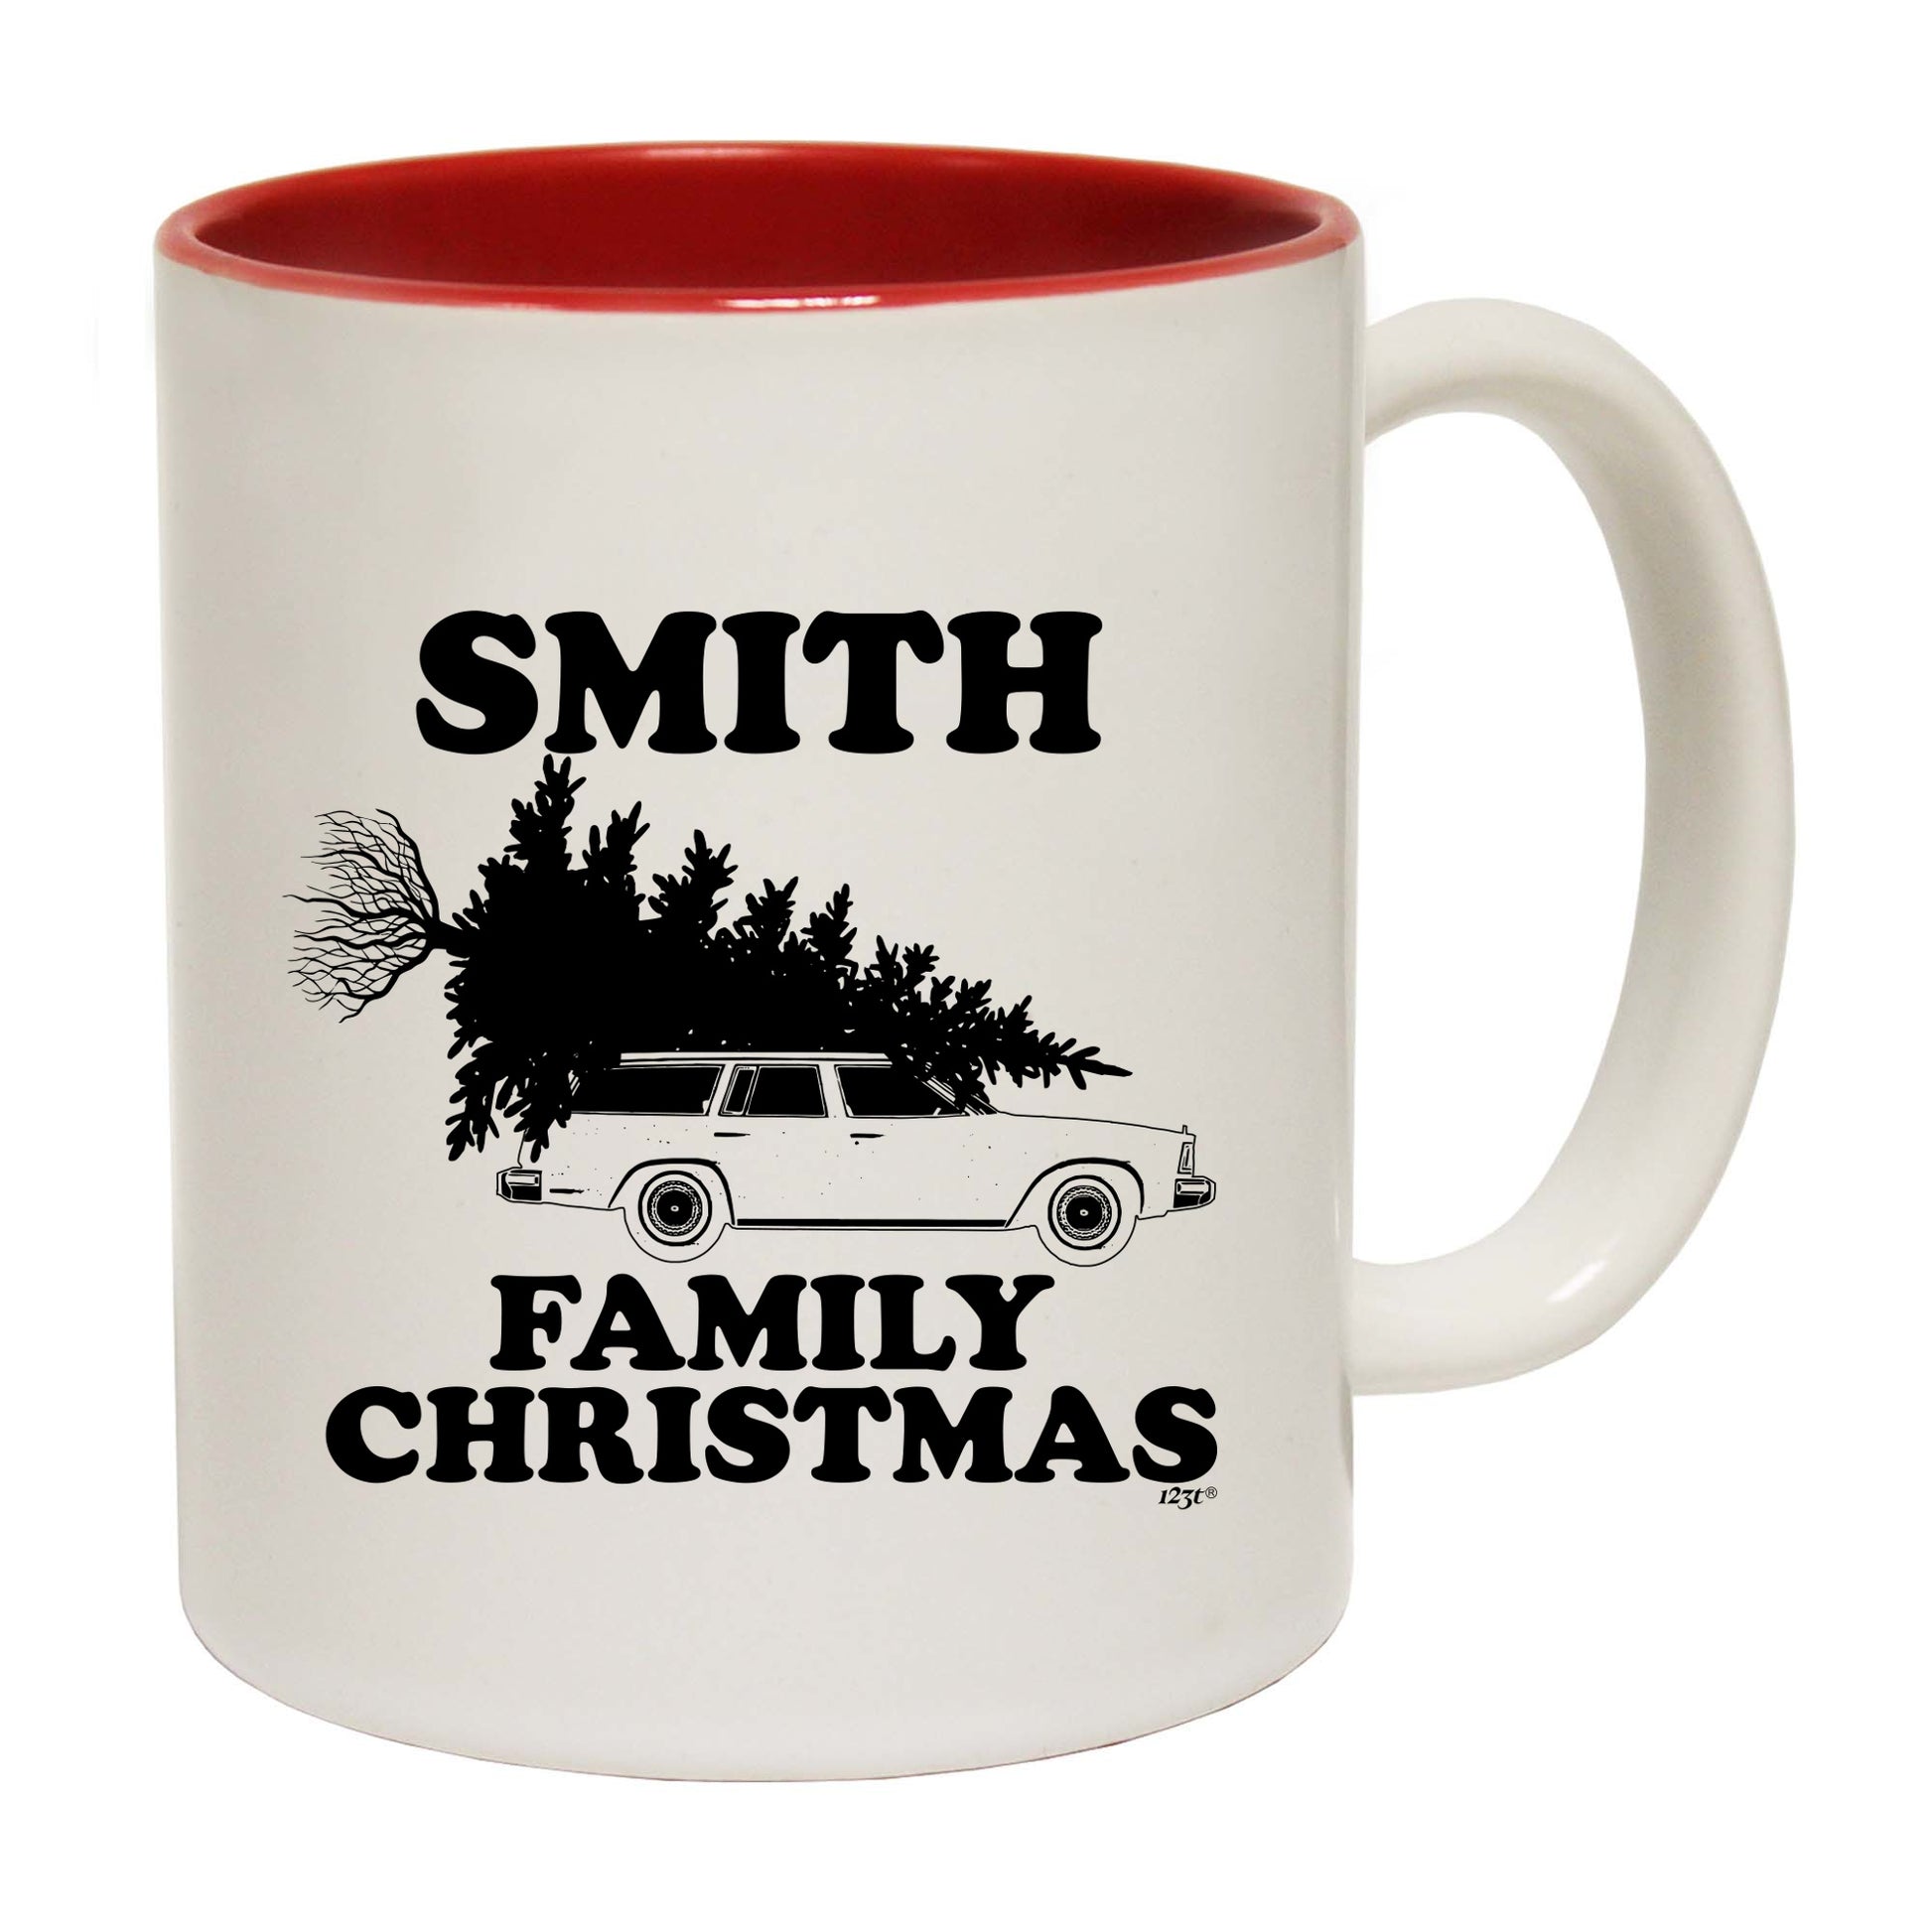 The Christmas Hub - Family Christmas Smith - Funny Coffee Mug